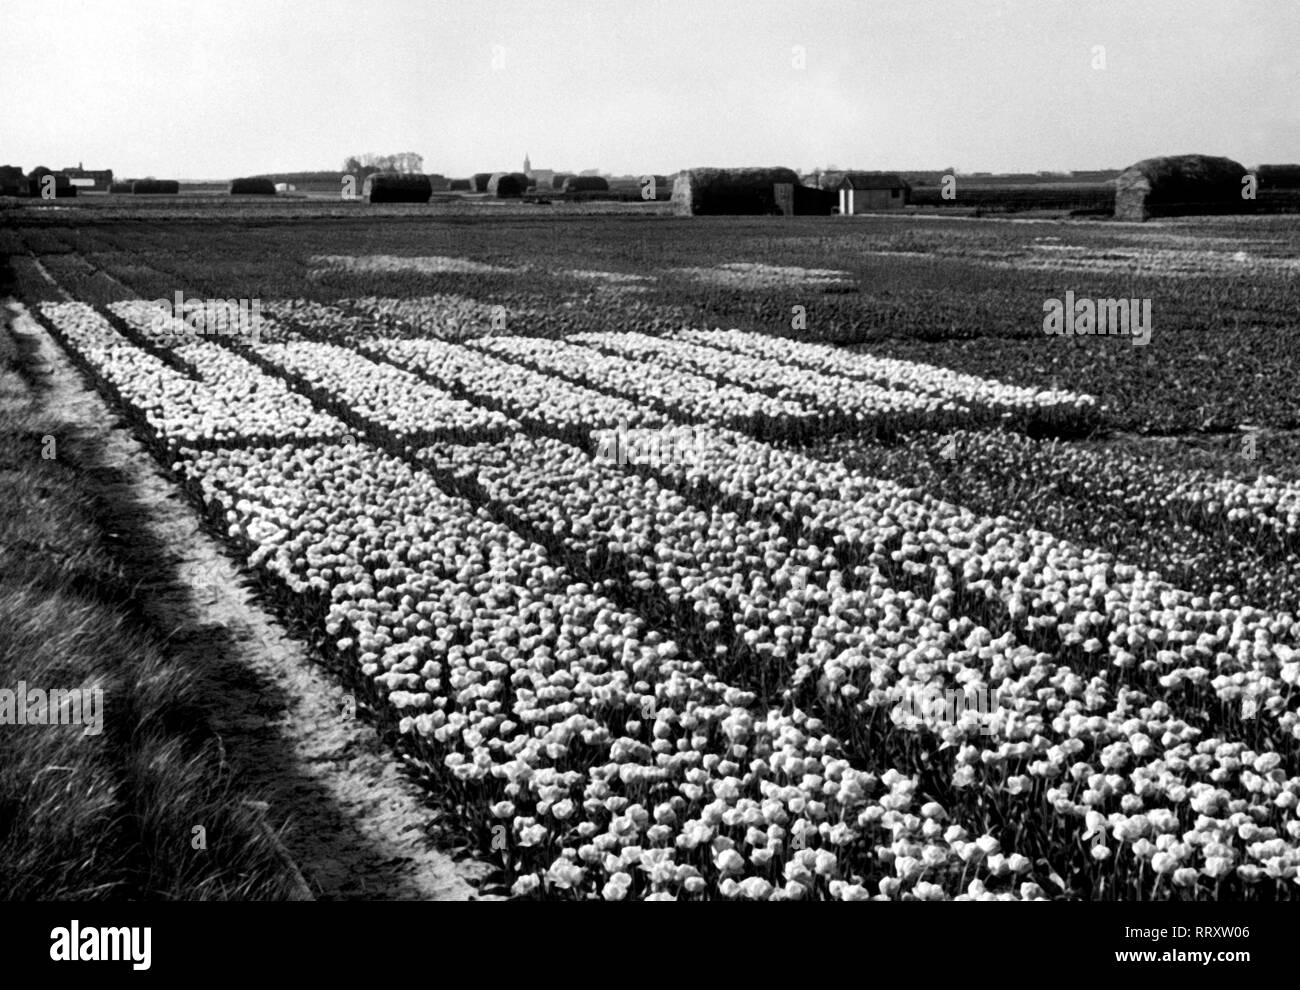 Se rendre en Hollande - Hollande, une partie des Pays-Bas - champs de tulipes. Tulpenfelder in der Provinz Hollande, Pays-Bas. L'image date de vers 1956. Photo Erich Andres Banque D'Images